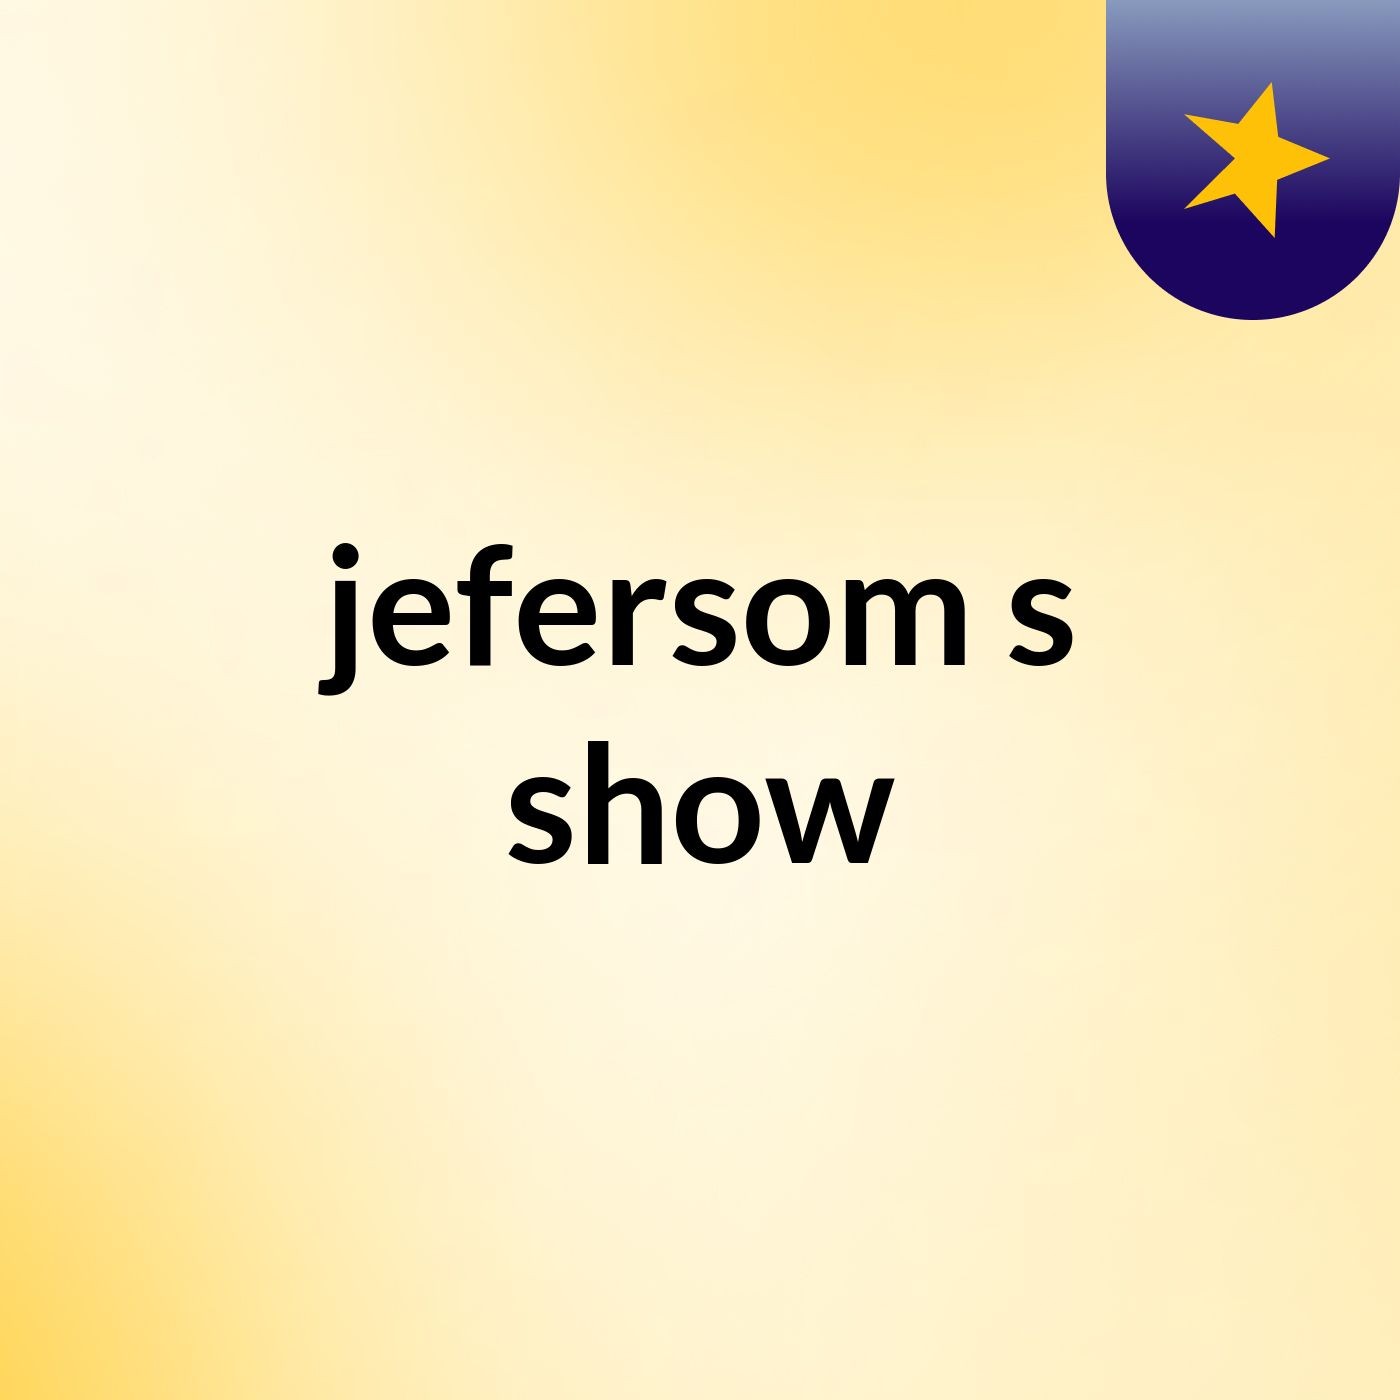 jefersom's show